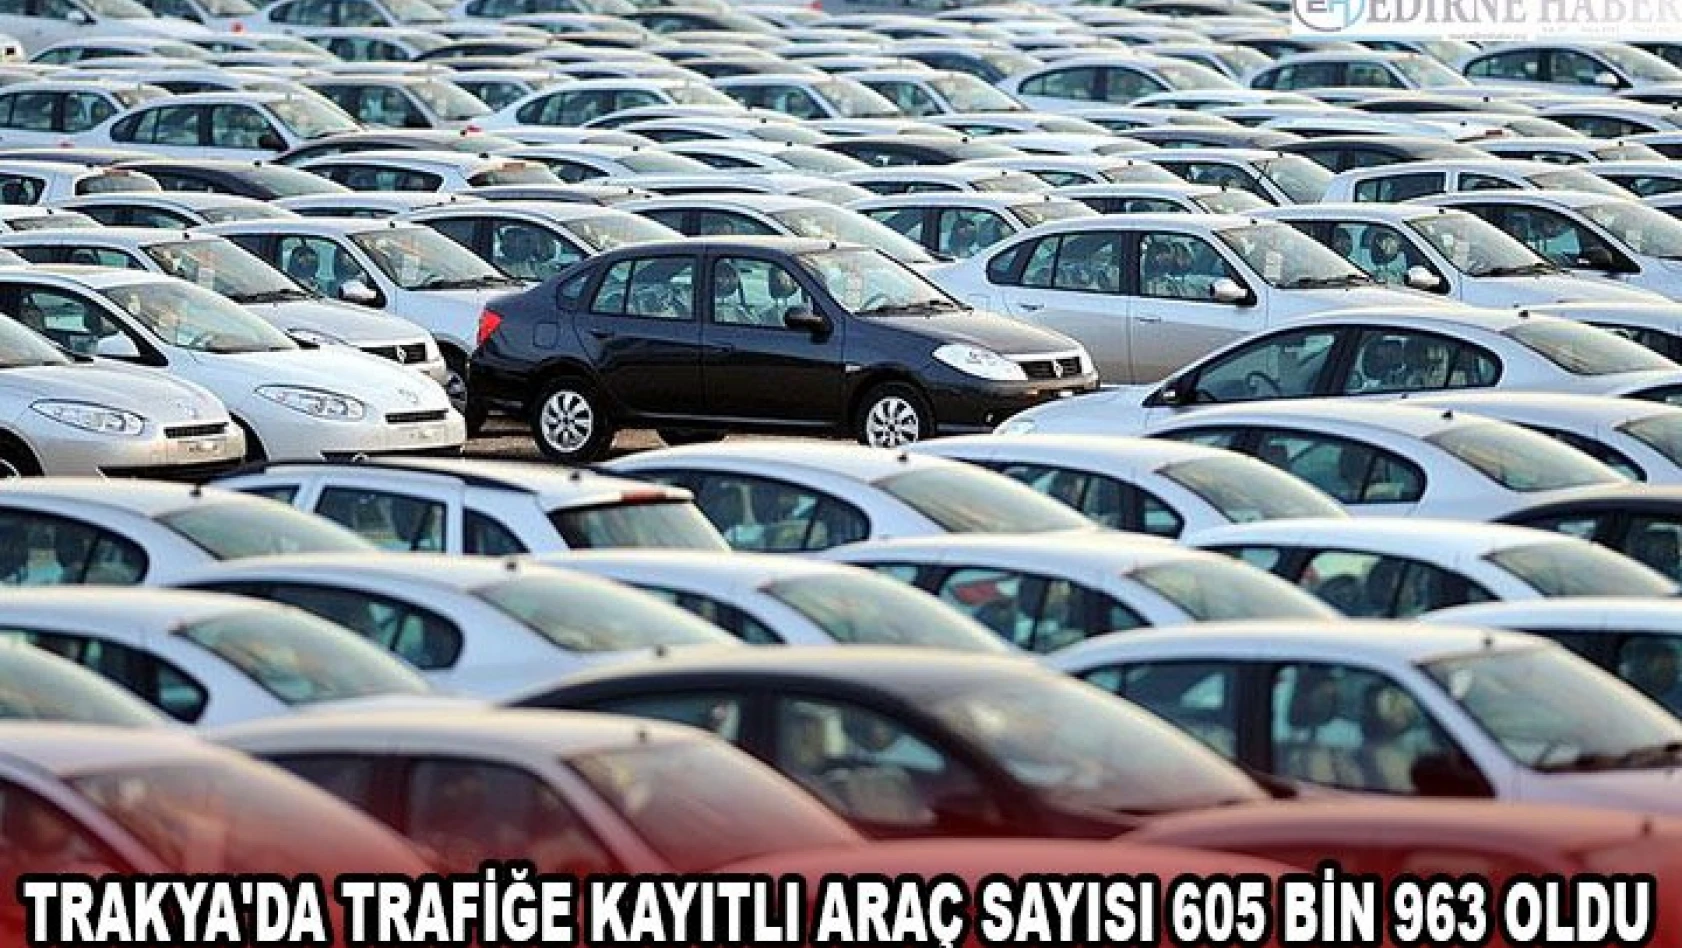 Trakya'da trafiğe kayıtlı araç sayısı 605 bin 963 oldu